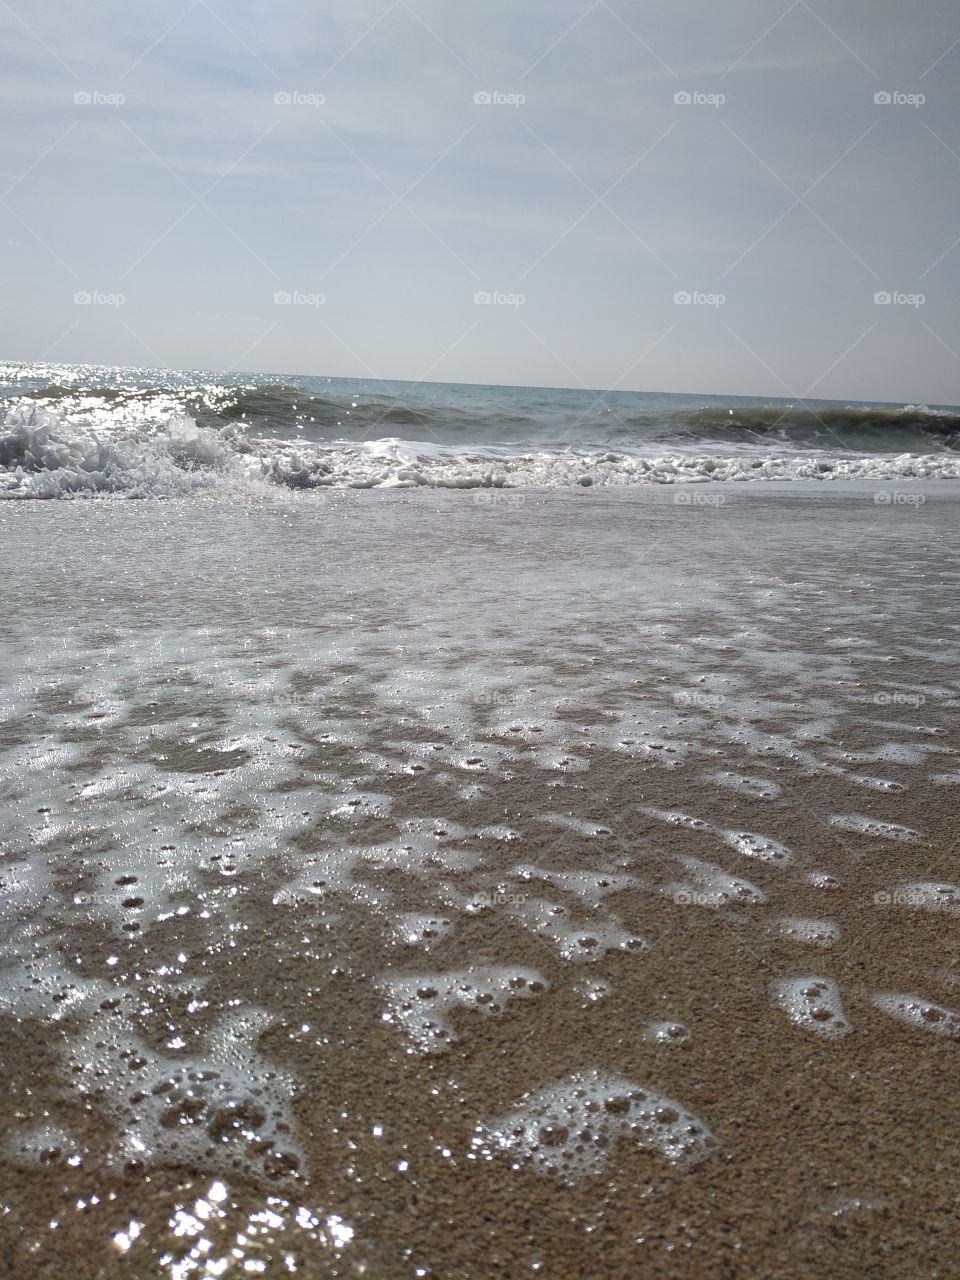 Foam on the beach, ripples and special colors.
Espuma en la playa, olas revueltas con colores especiales.